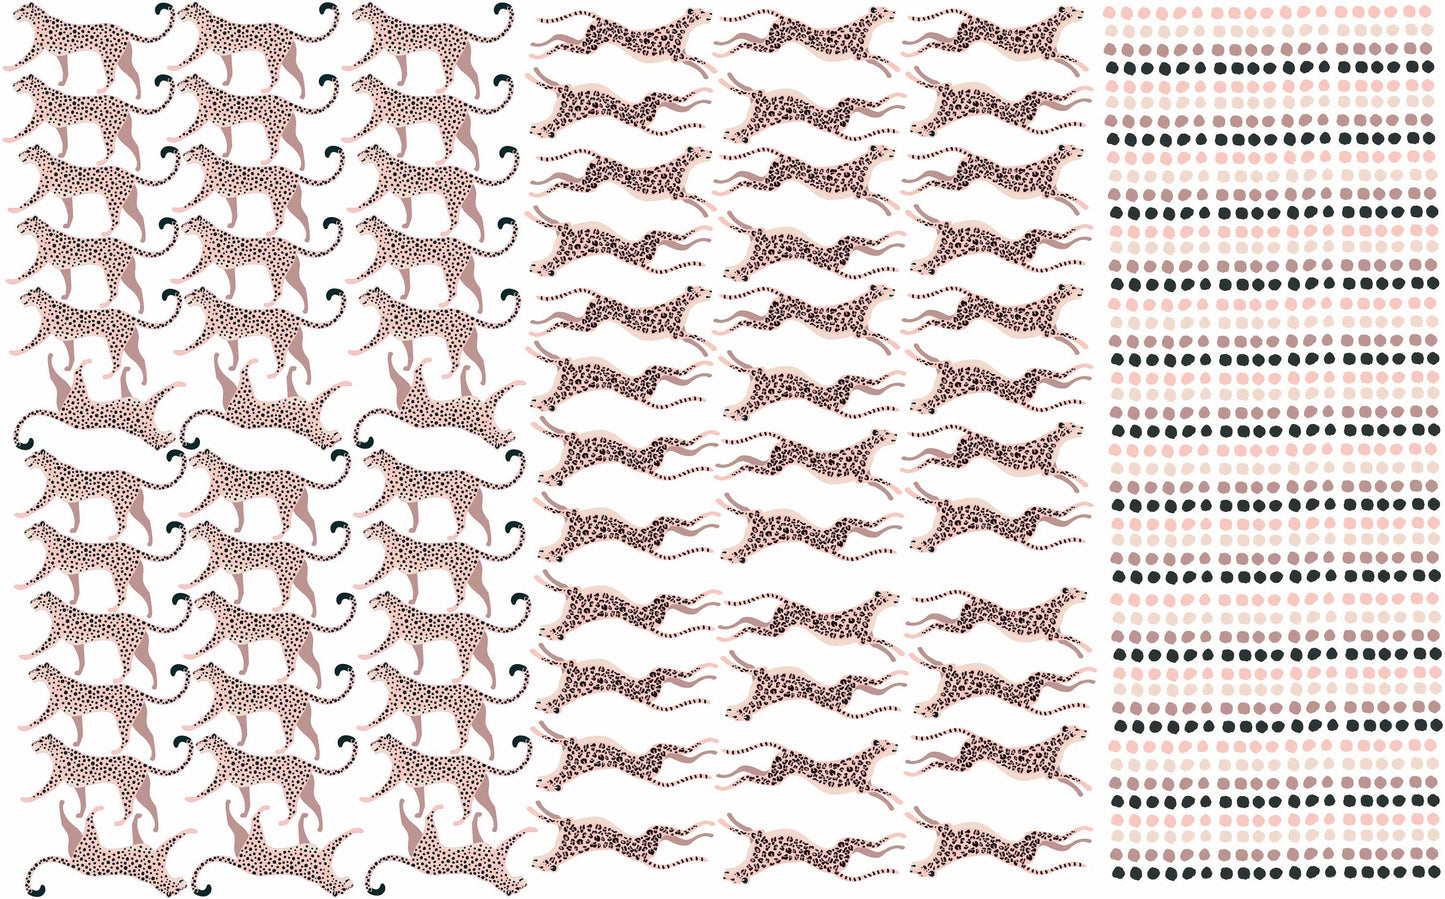 Leopard Print Wall Decals Polka Dots Stickers, LF101